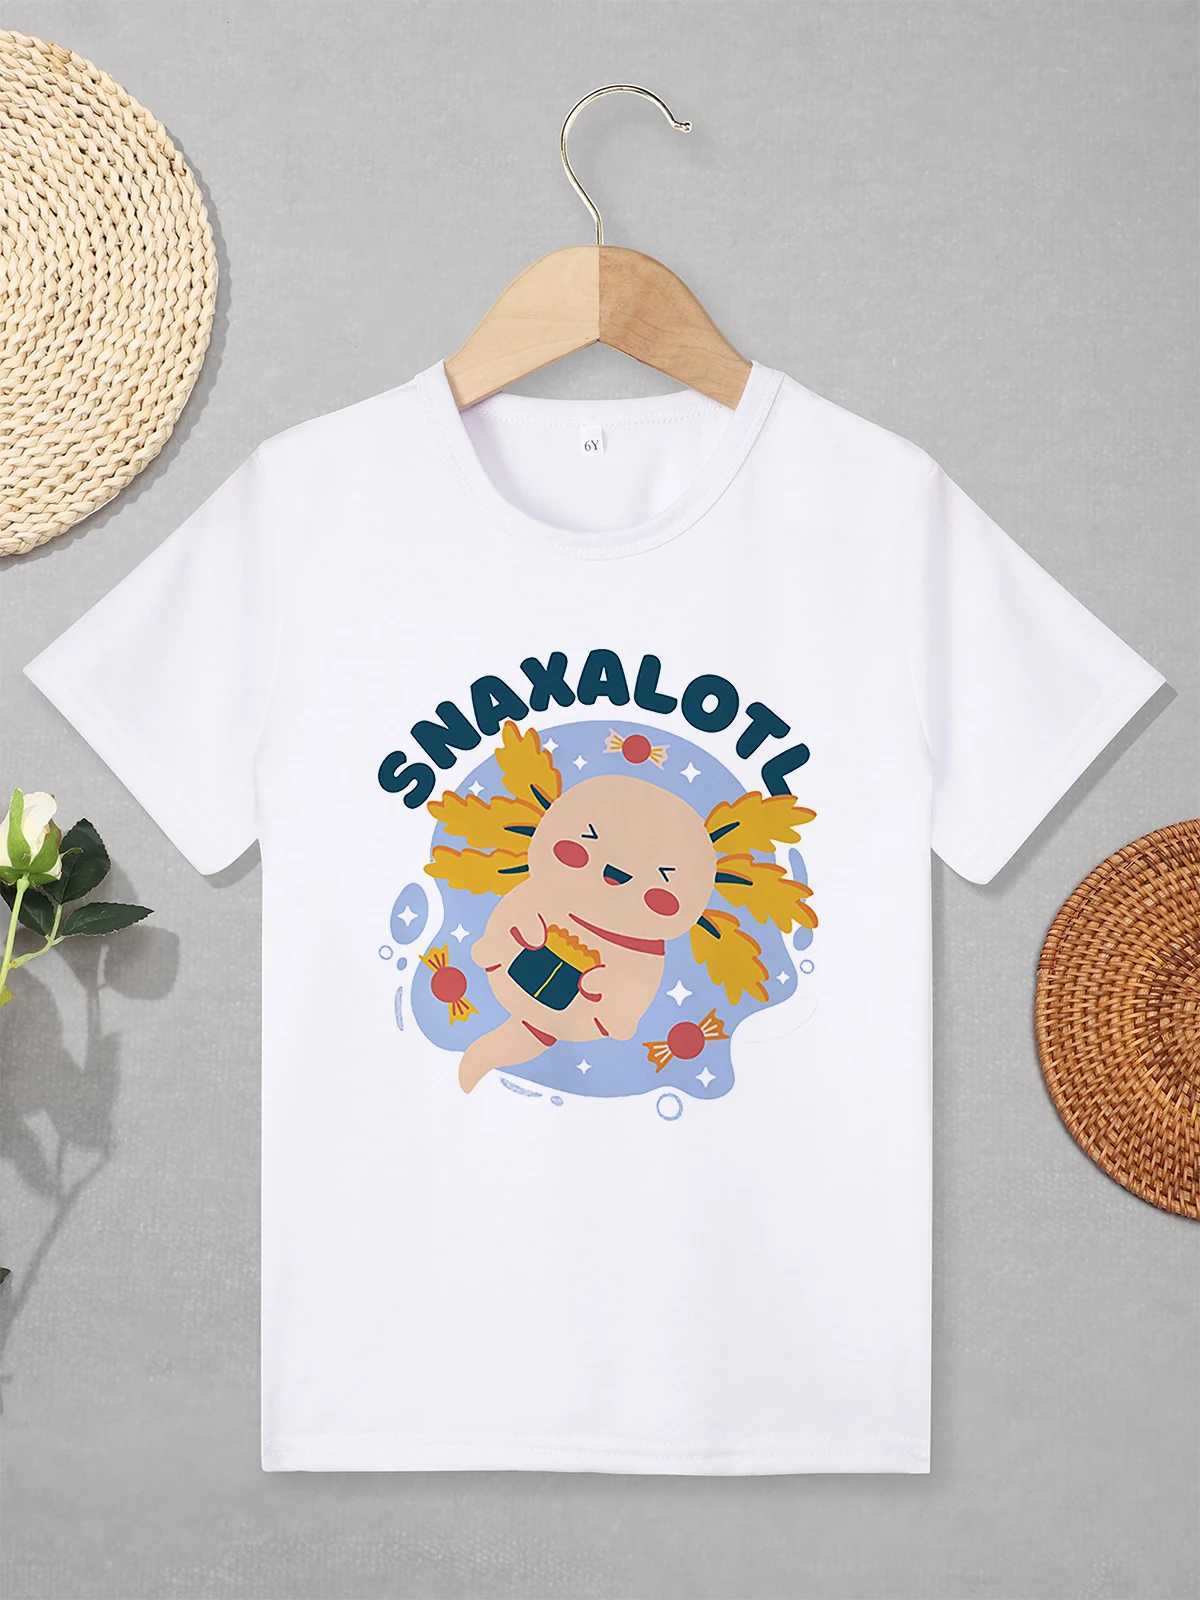 Magliette kawaii harajuku cartone animato t-shirt axolotl bambini ragazze ragazzi modalità abbigliamento casual abbigliamento da esterno giochi bambini completamente abbinati t-shirtl240509